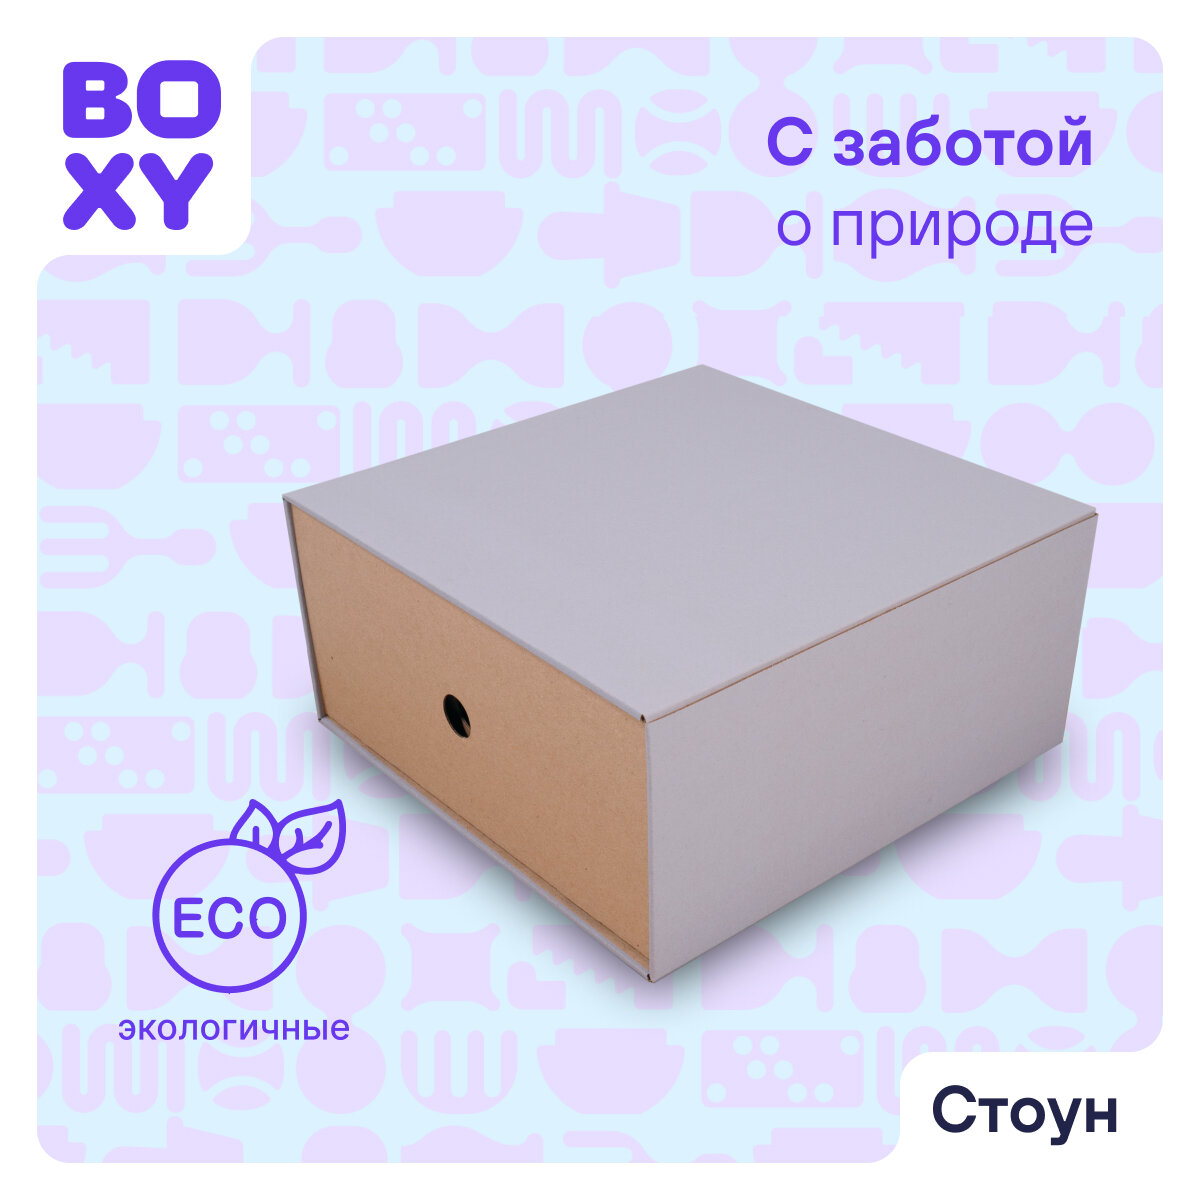 Коробка выдвижная для интерьера и организации системы хранения вещей стоун BOXY, гофрокартон, серый, 32х32х15 см, 5 шт в упаковке